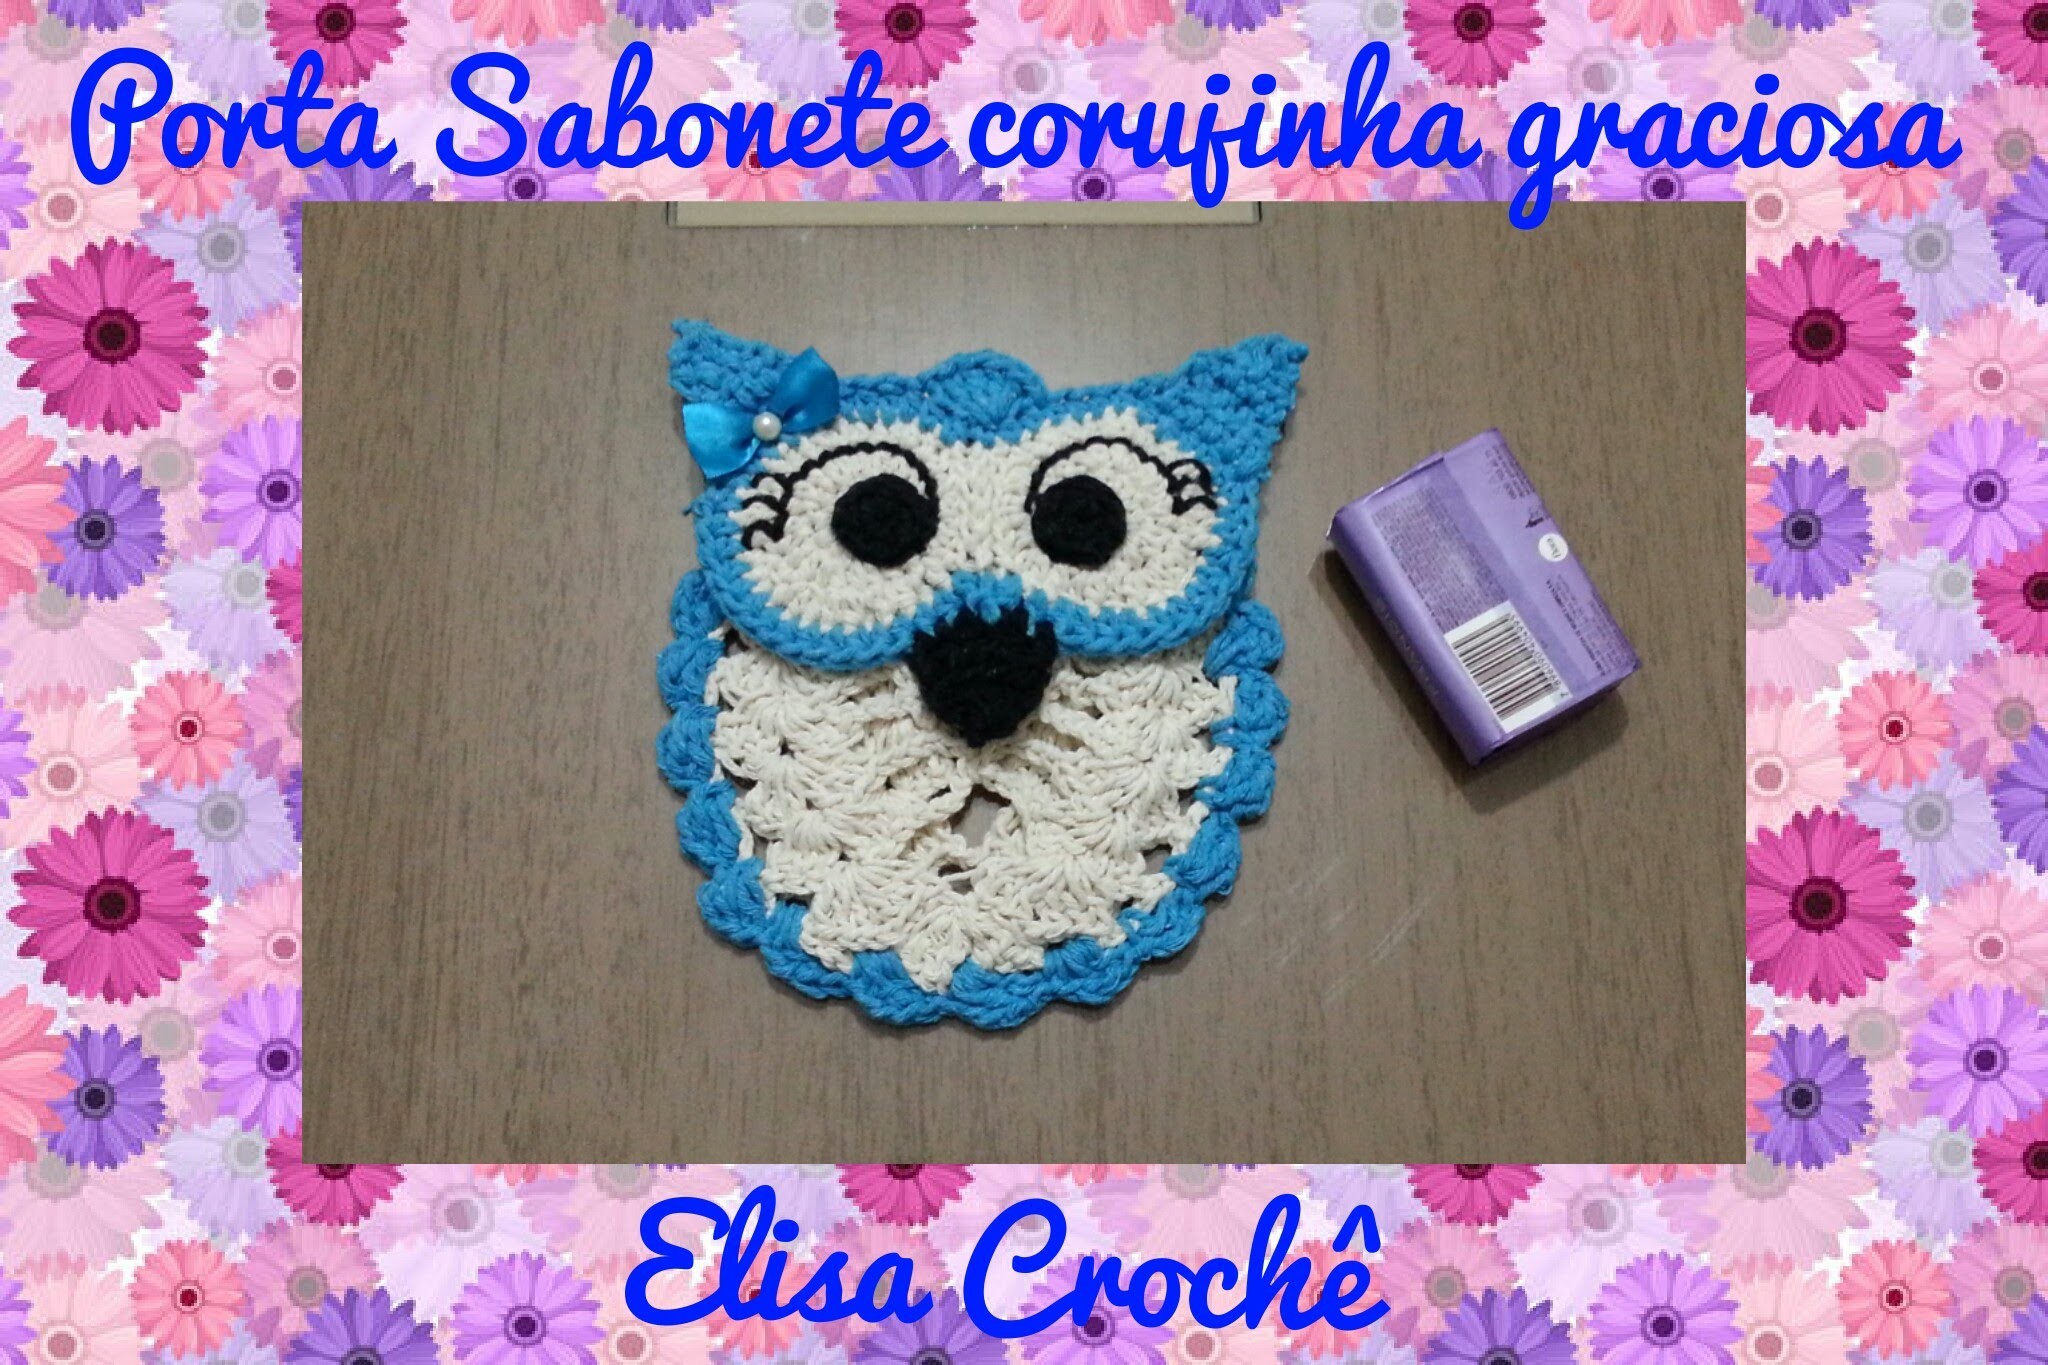 Porta Sabonete corujinha graciosa em crochê # Elisa Crochê